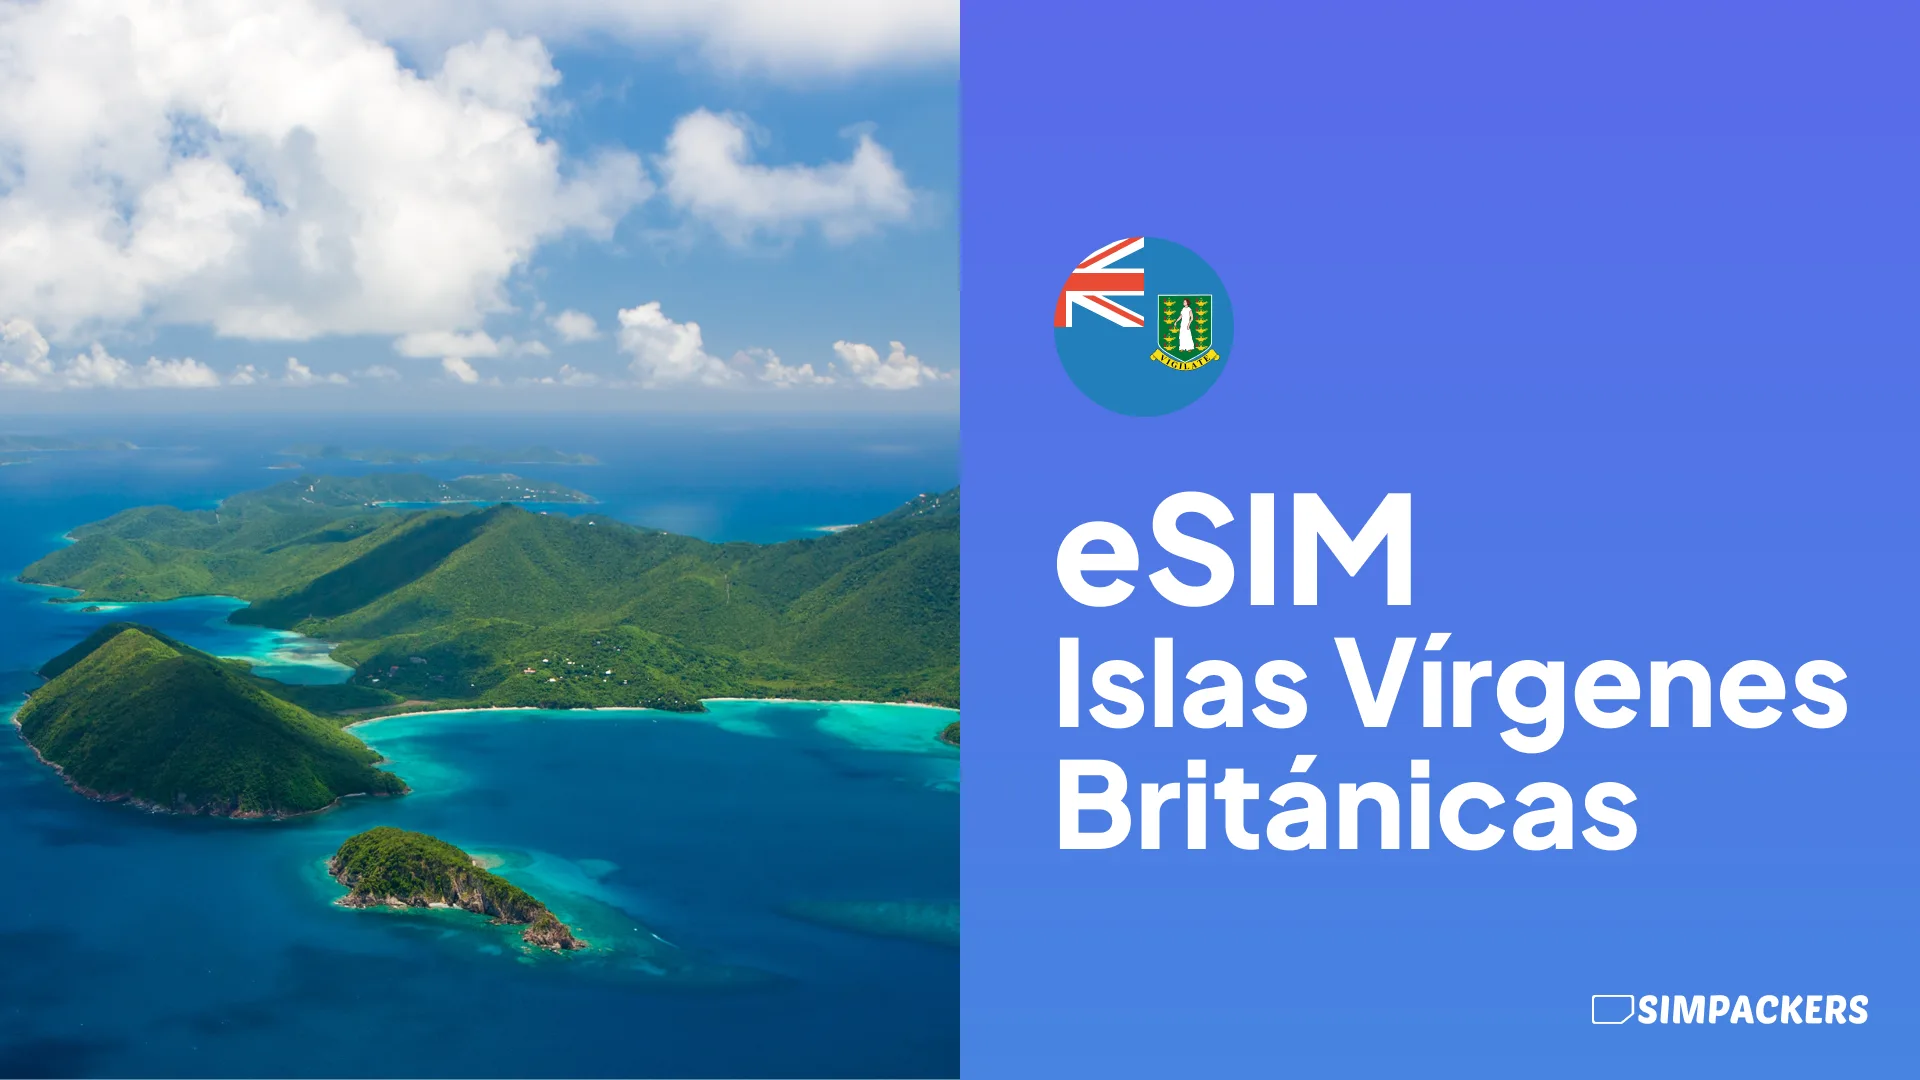 ES/FEATURED_IMAGES/esim-islas-virgenes-britanicas.webp